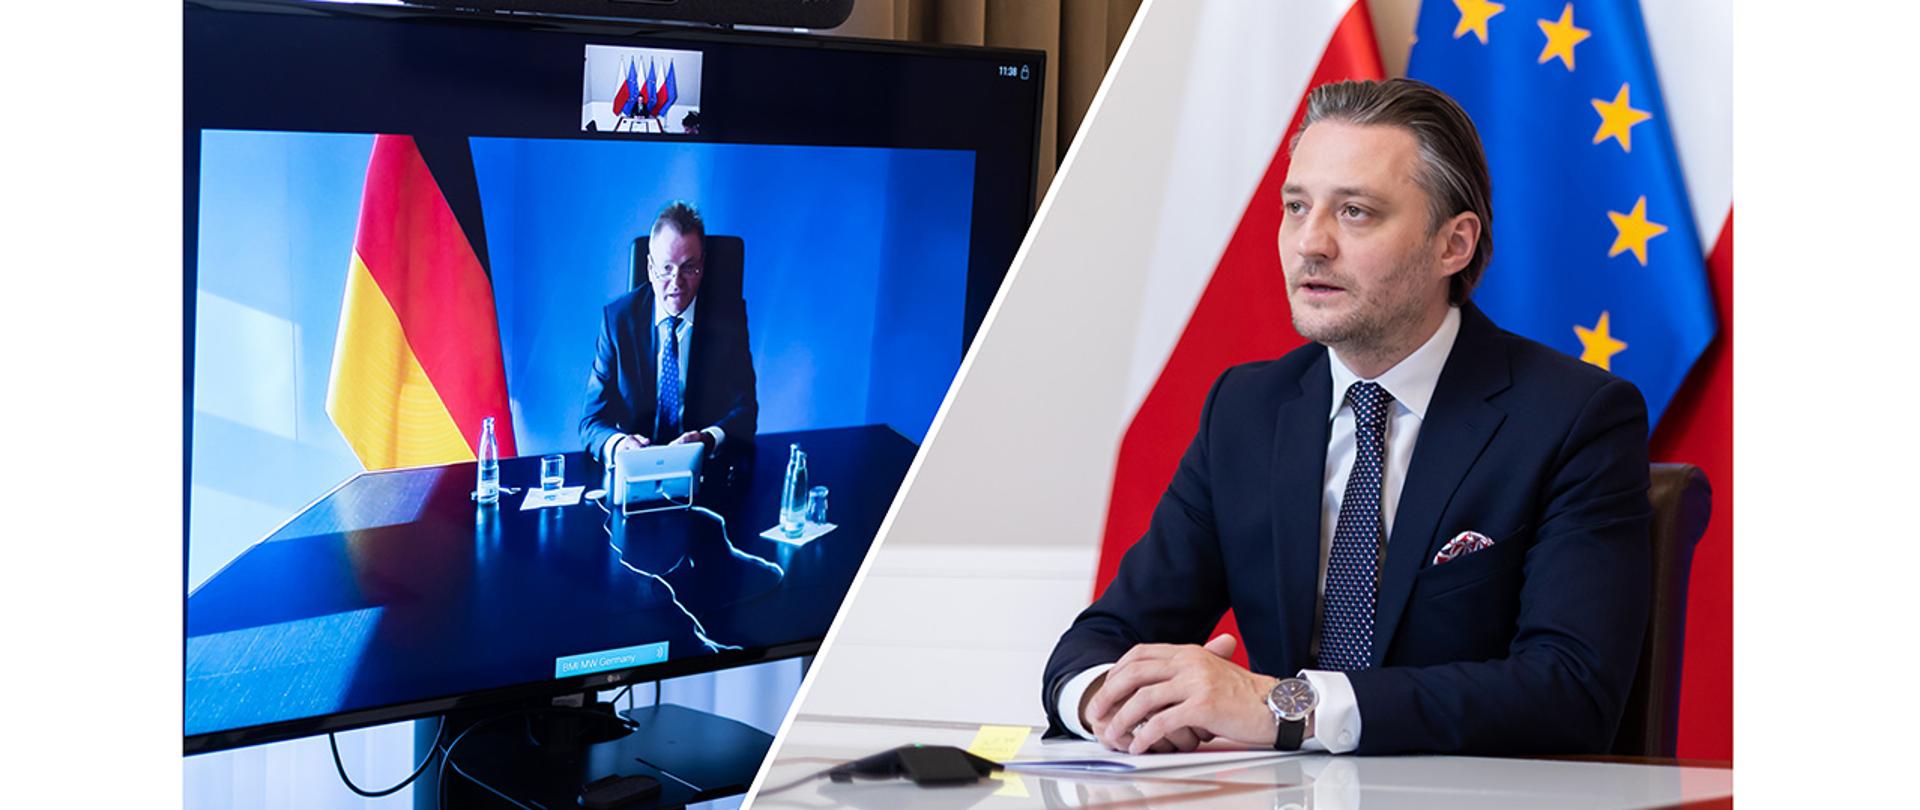 Po lewej stronie wiceminister Helmute Teichmann, którego wizerunek jest wyświetlony na telewizorze, po prawej stronie wiceminister Bartosz Grodecki podczas rozmowy.